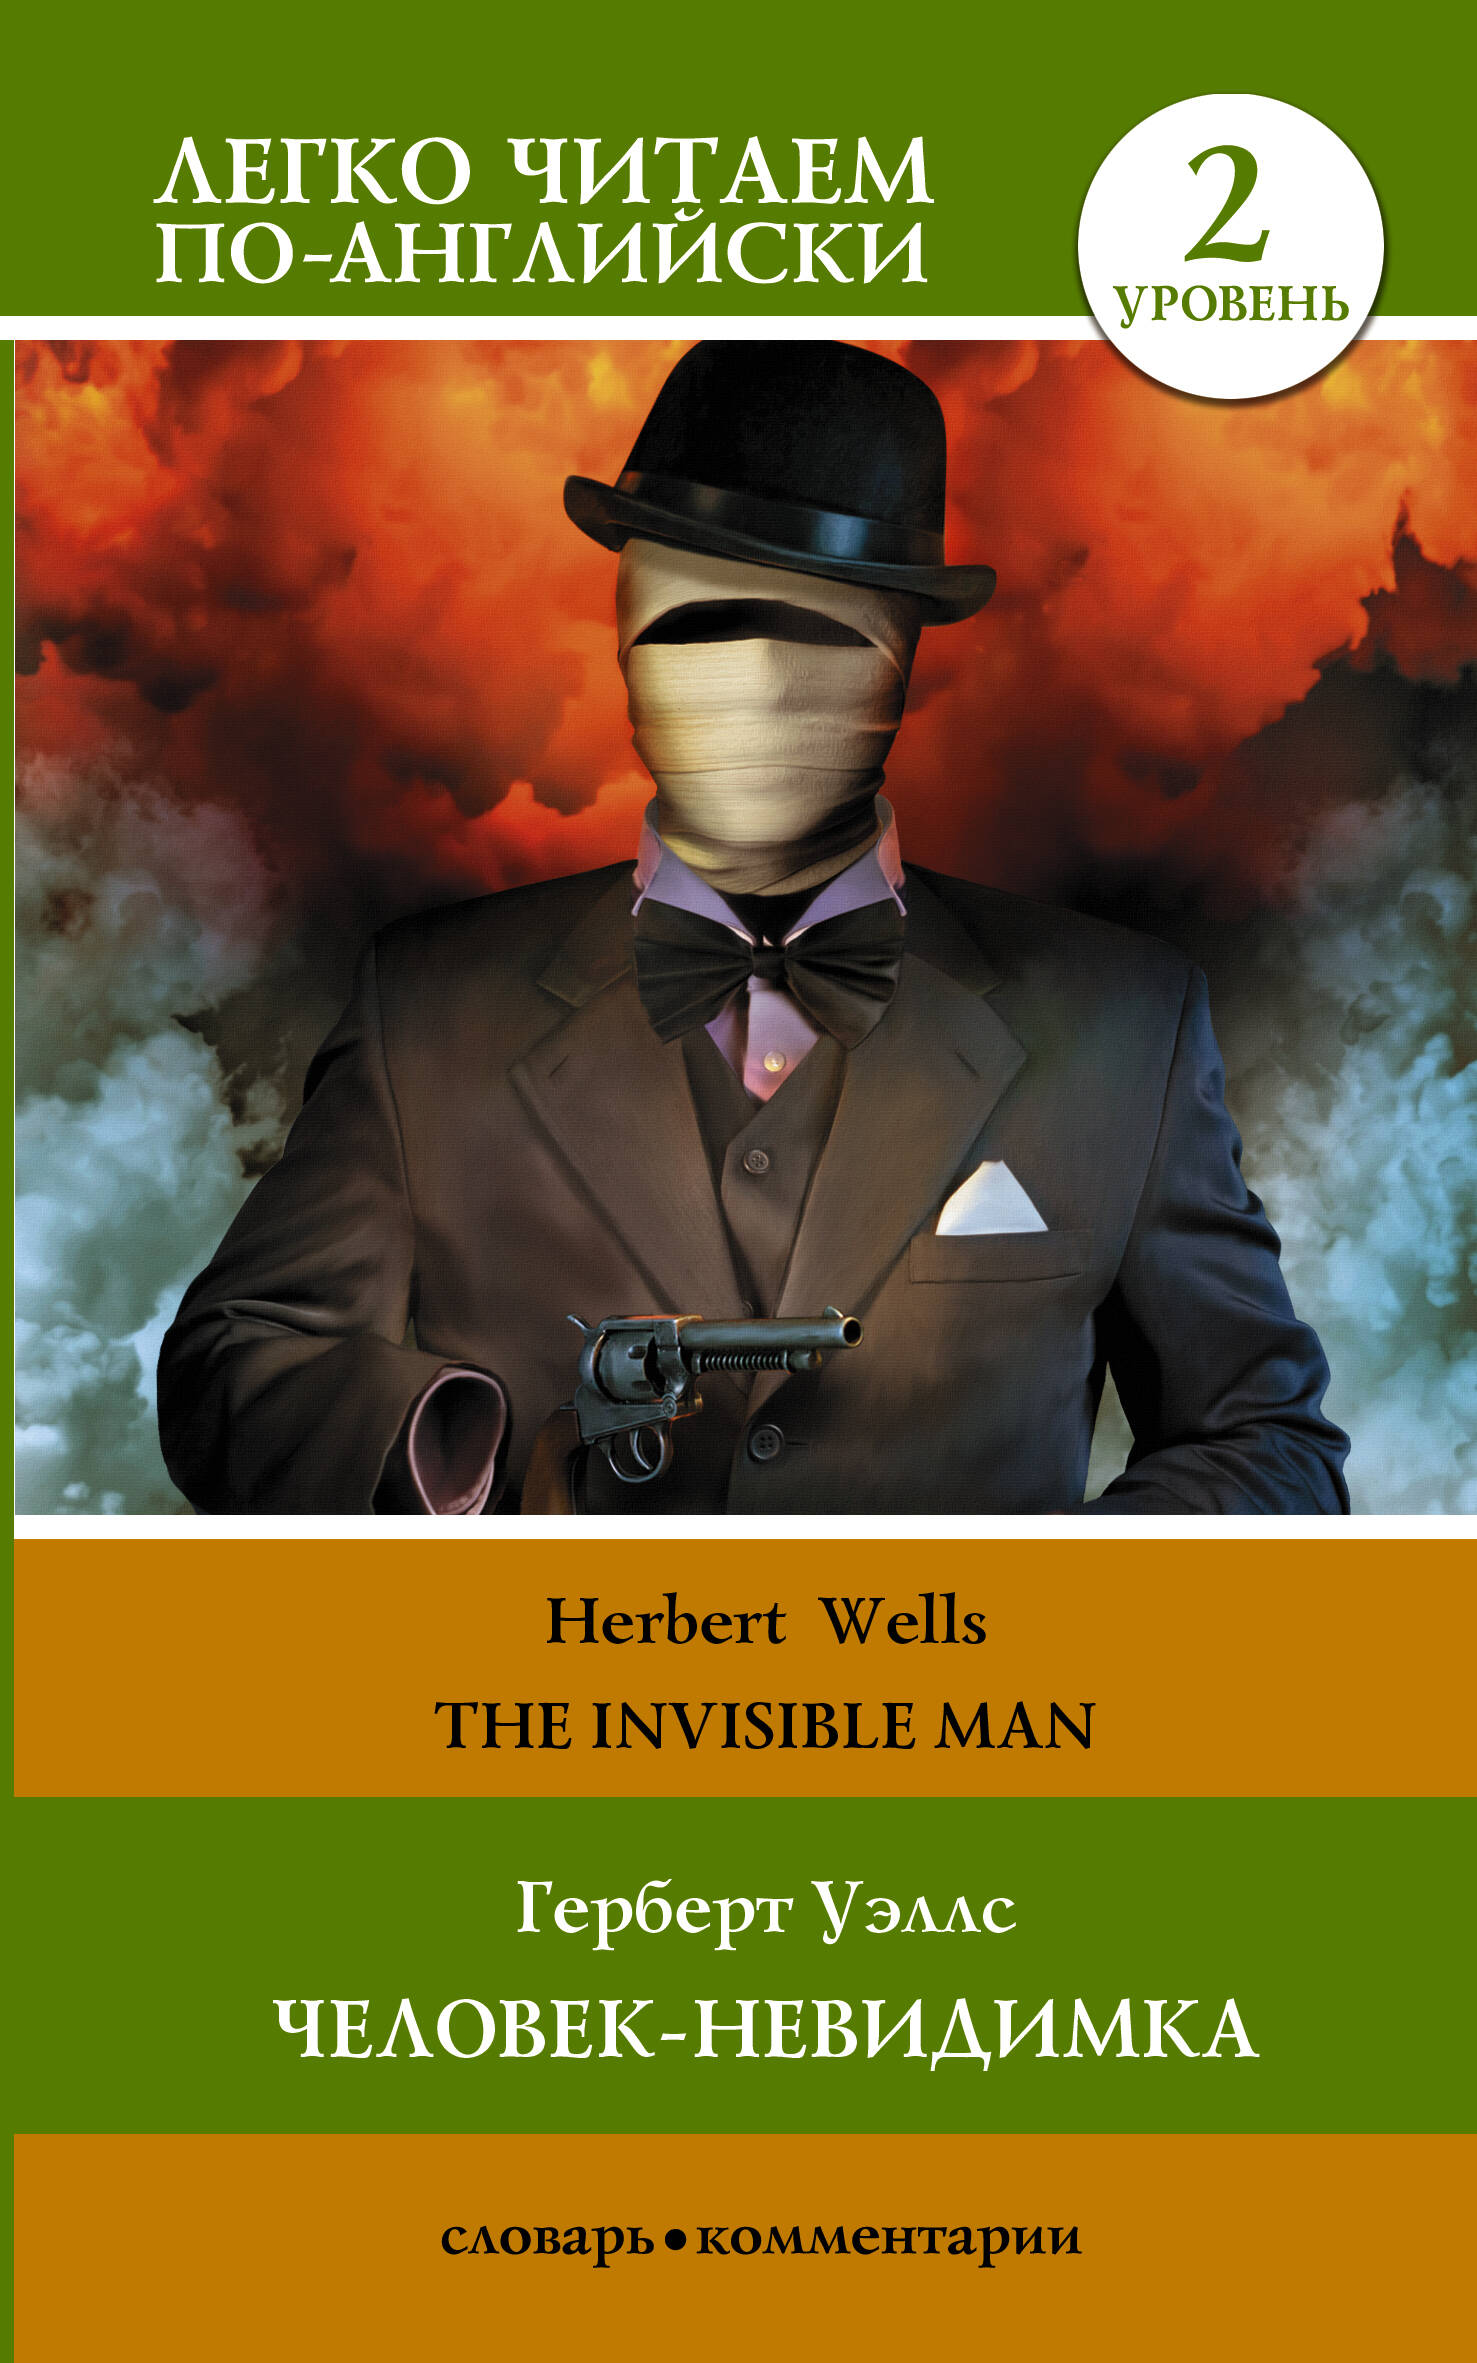 Уэллс Герберт Джордж Герберт Уэллс. Человек-невидимка = H.G. Wells. The Invisible Man. Уровень 2 the invisible man человек невидимка на английском языке уровень в1 уэллс г дж